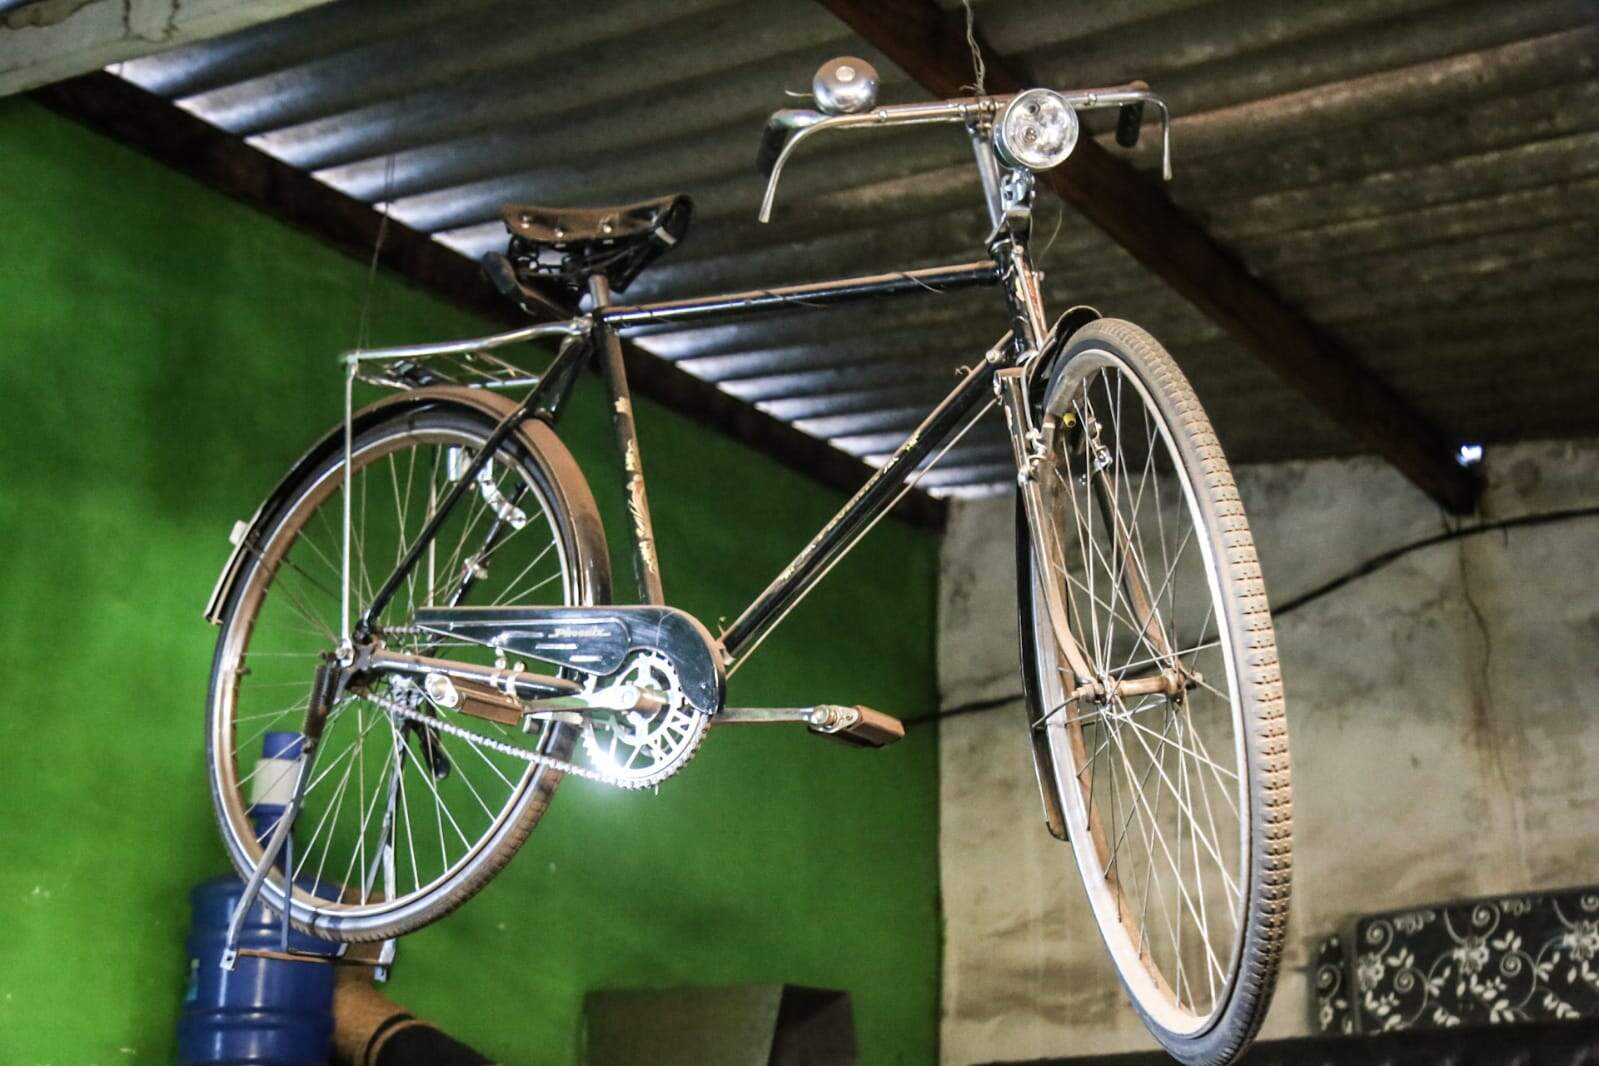 Bike está exposta em loja de móveis usados. Foto: Henrique Arakaki/Jornal Midiamax